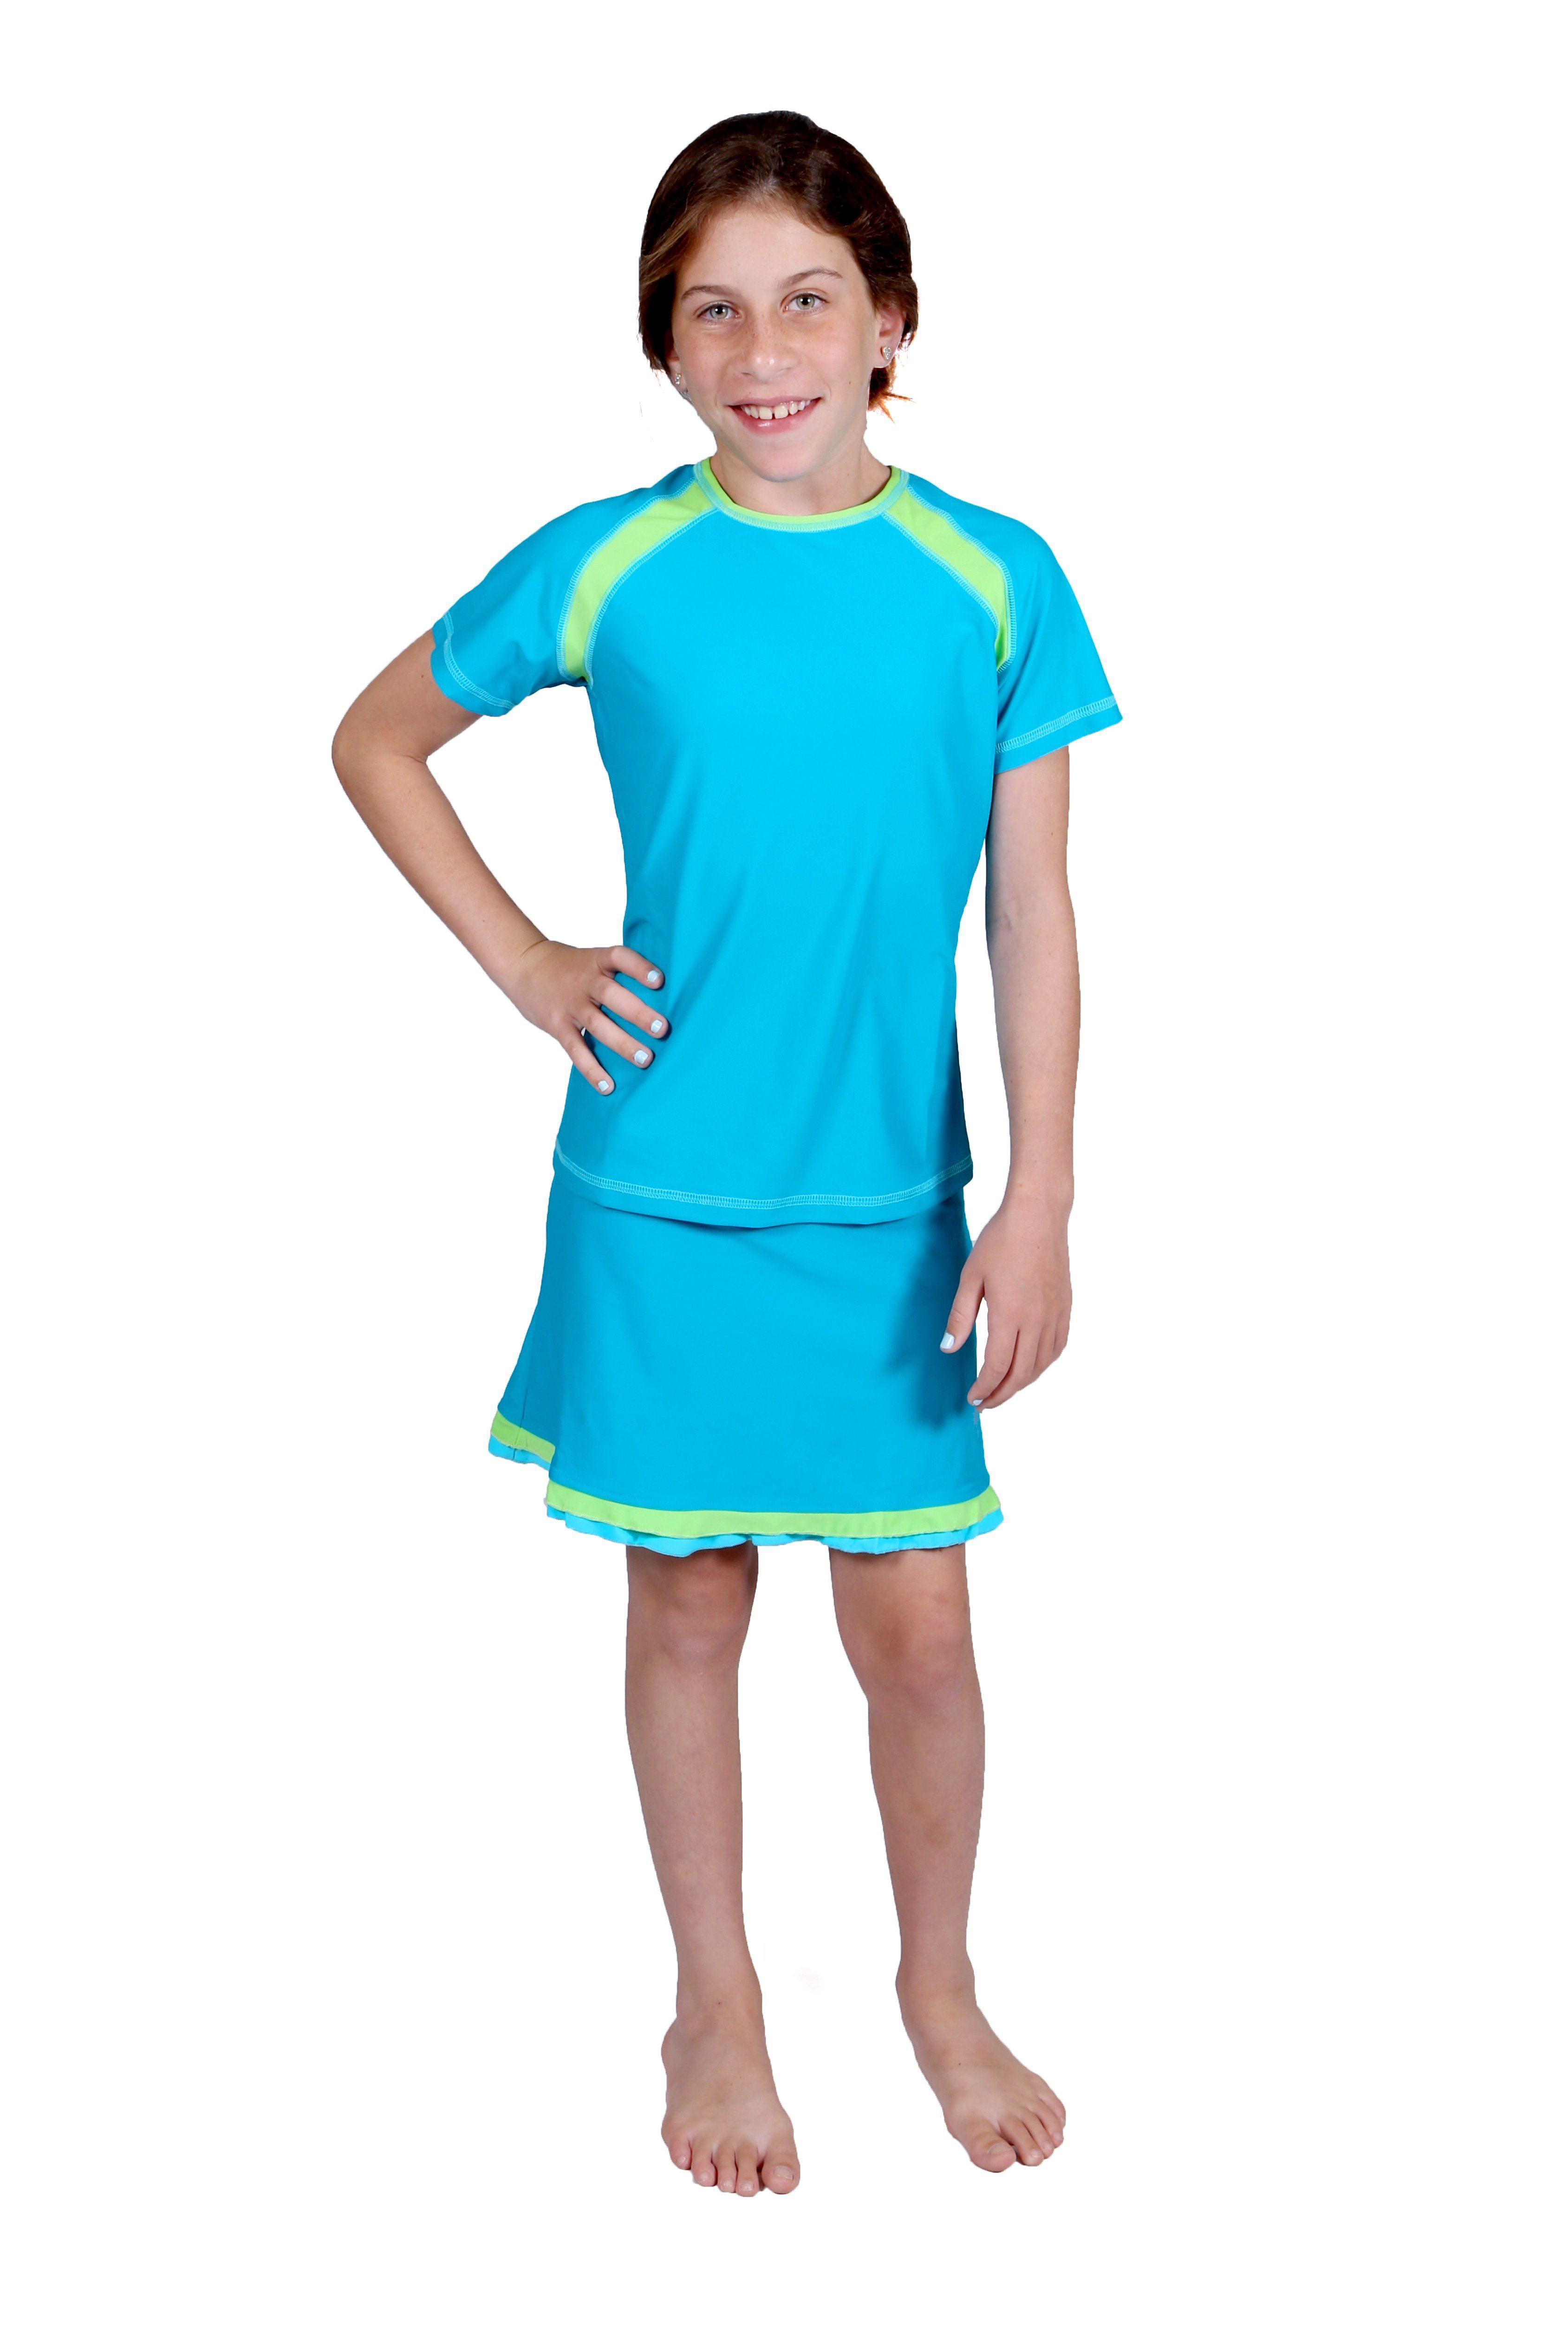 Girls' Short Sleeve Swim Top and Girls' Ruffle Swim Skirt - Walmart.com